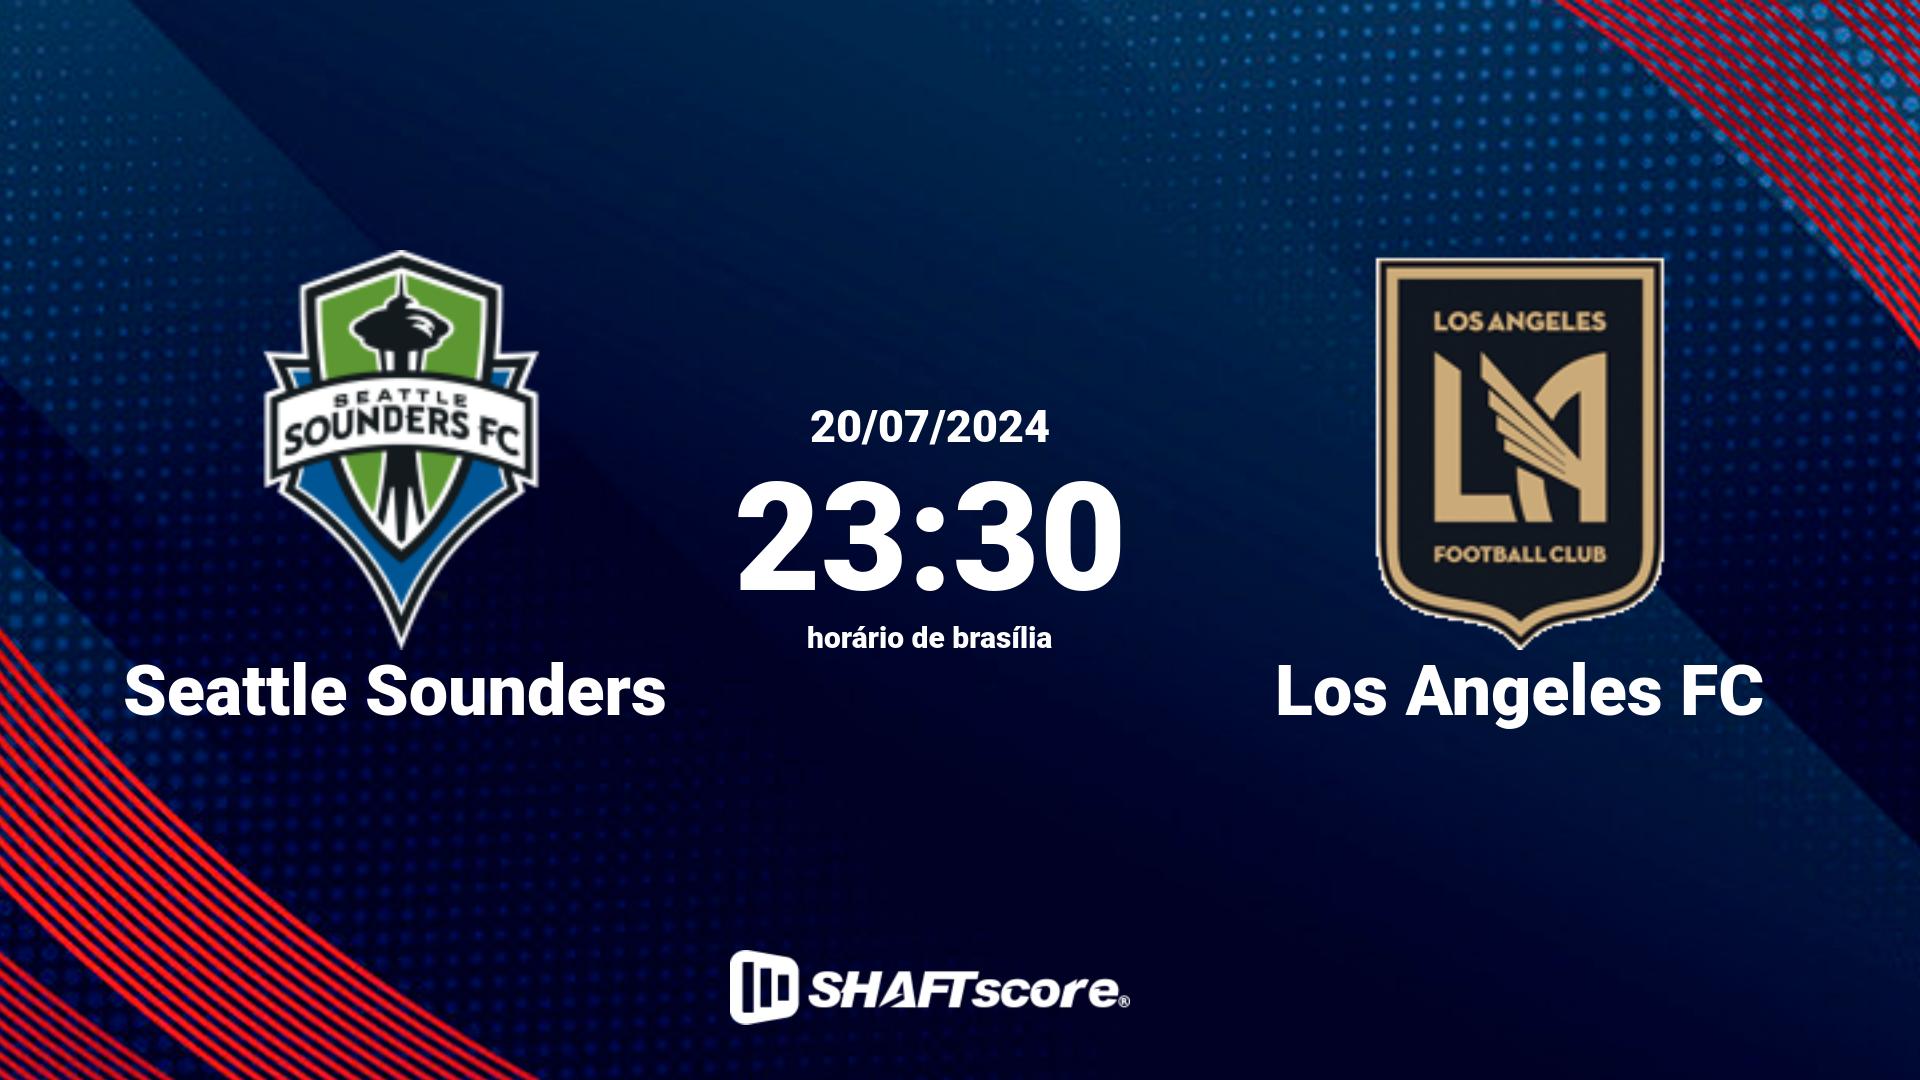 Estatísticas do jogo Seattle Sounders vs Los Angeles FC 20.07 23:30